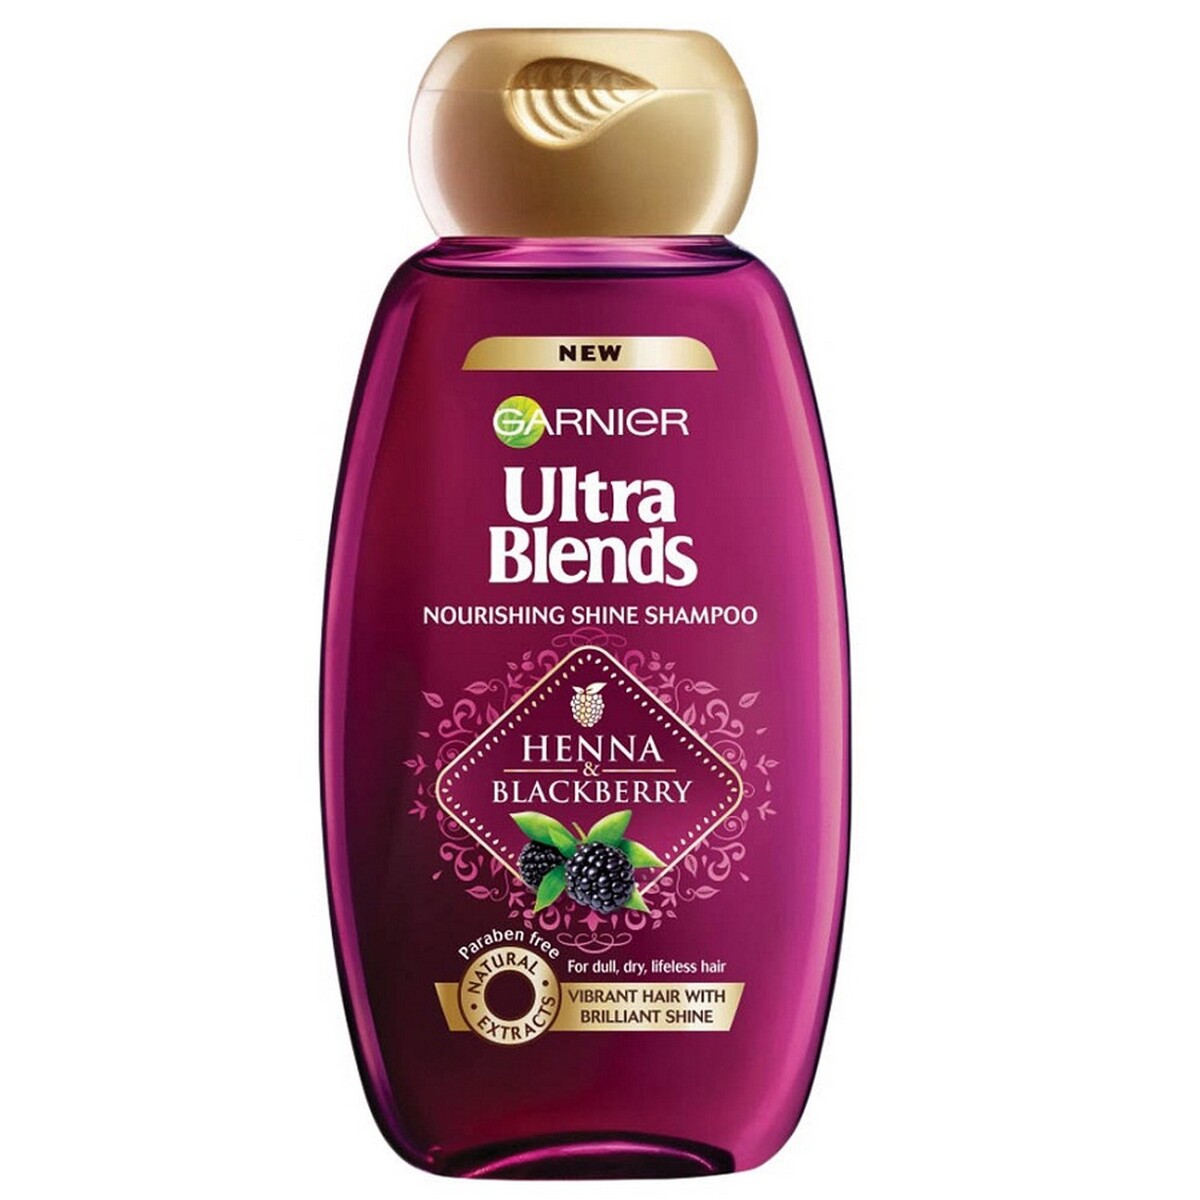 Garnier Shampoo Ultra Blends Henna and Blackberry 180ml